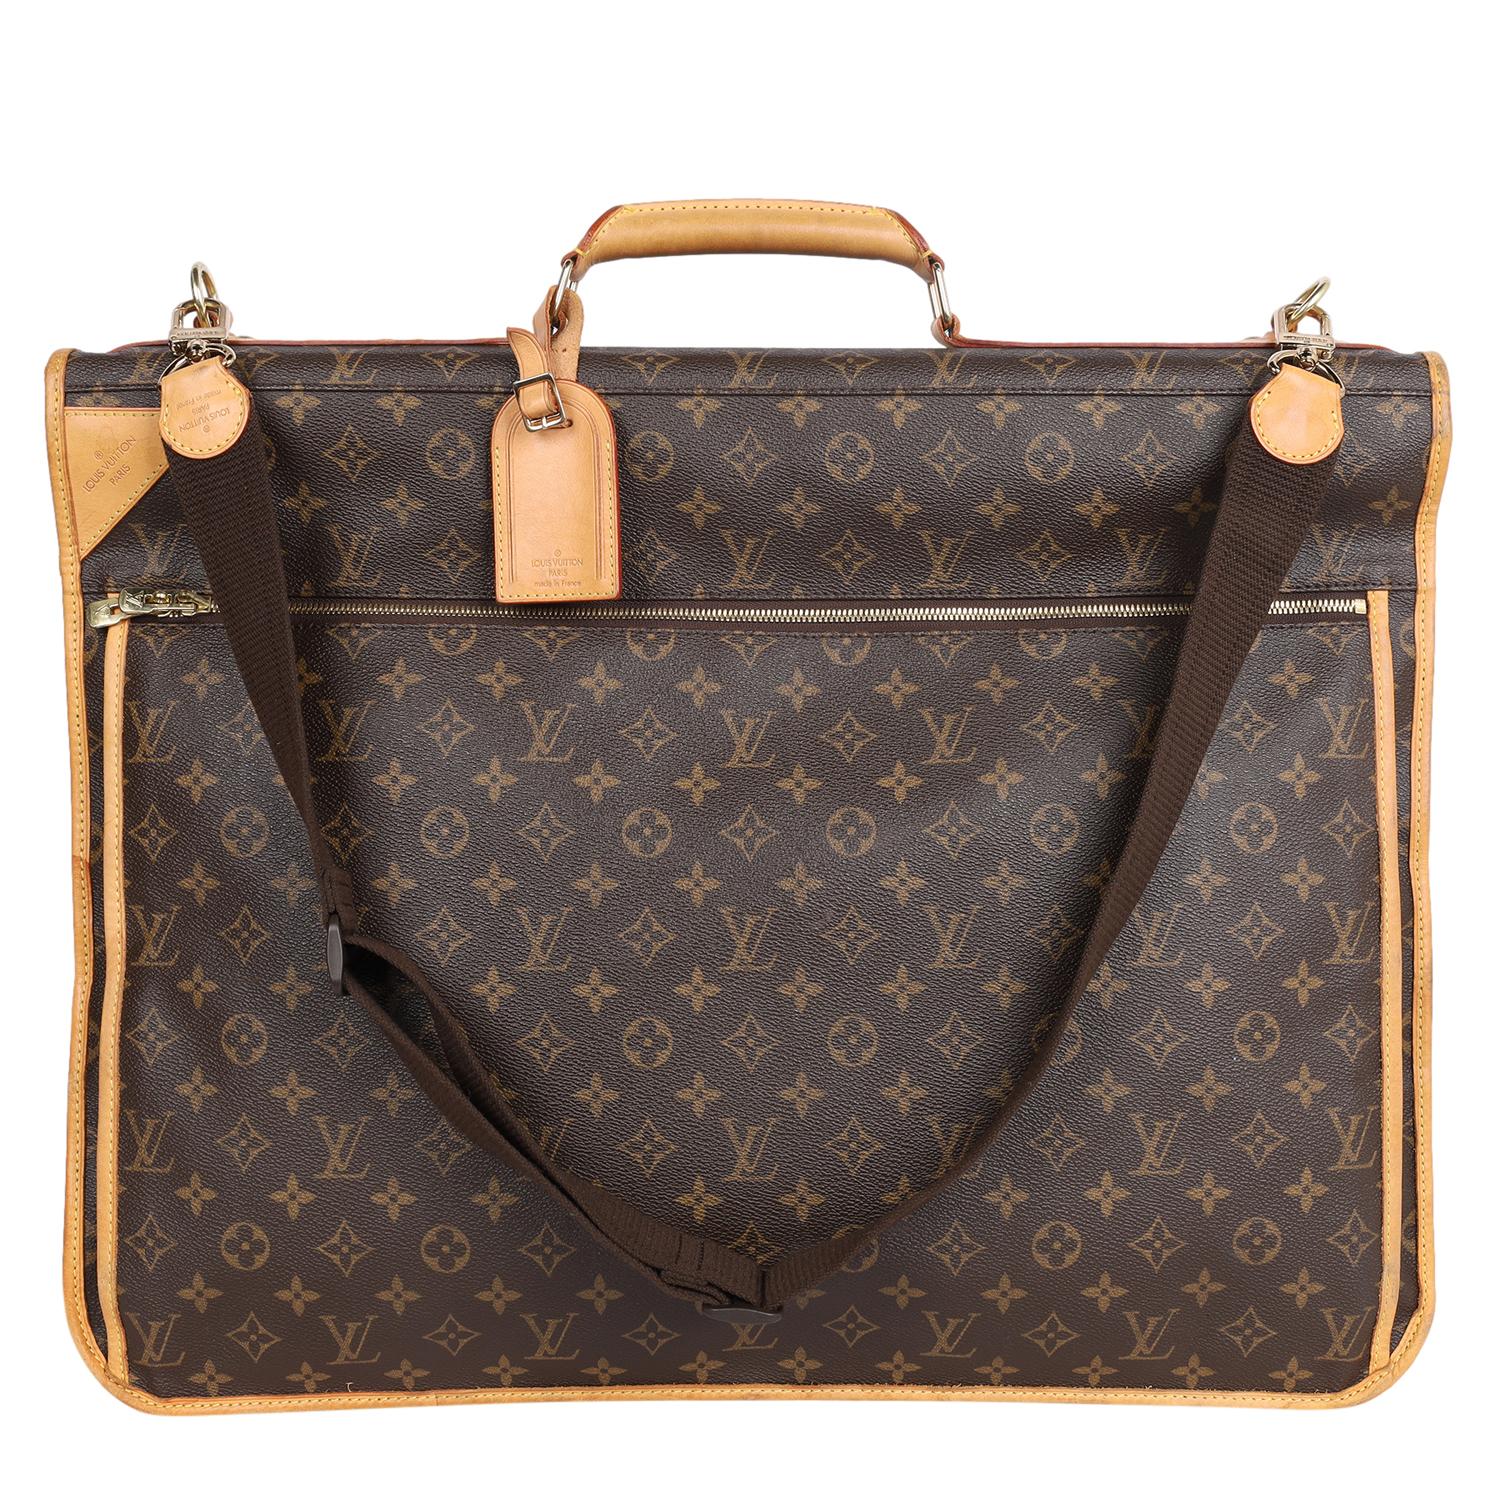 Authentique sac à vêtements portable valise Louis Vuitton marron avec monogramme. Il est doté d'une toile monogrammée, d'une fermeture à glissière avec zips monogrammés, d'accessoires dorés, d'une bandoulière amovible/ajustable, d'une poignée en